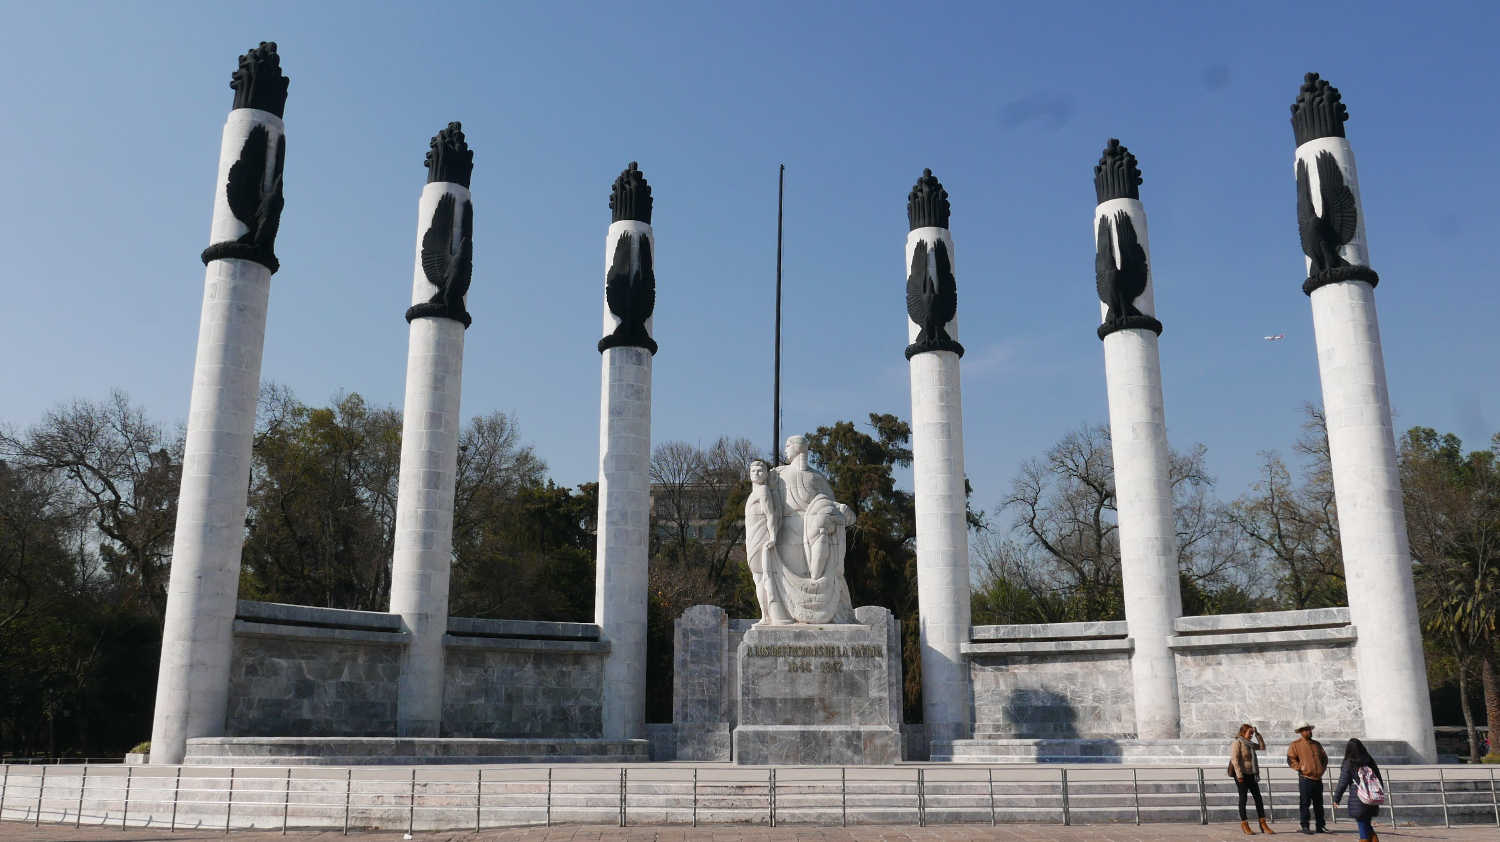 Monumento a los ninos heroes in Chapultepec park